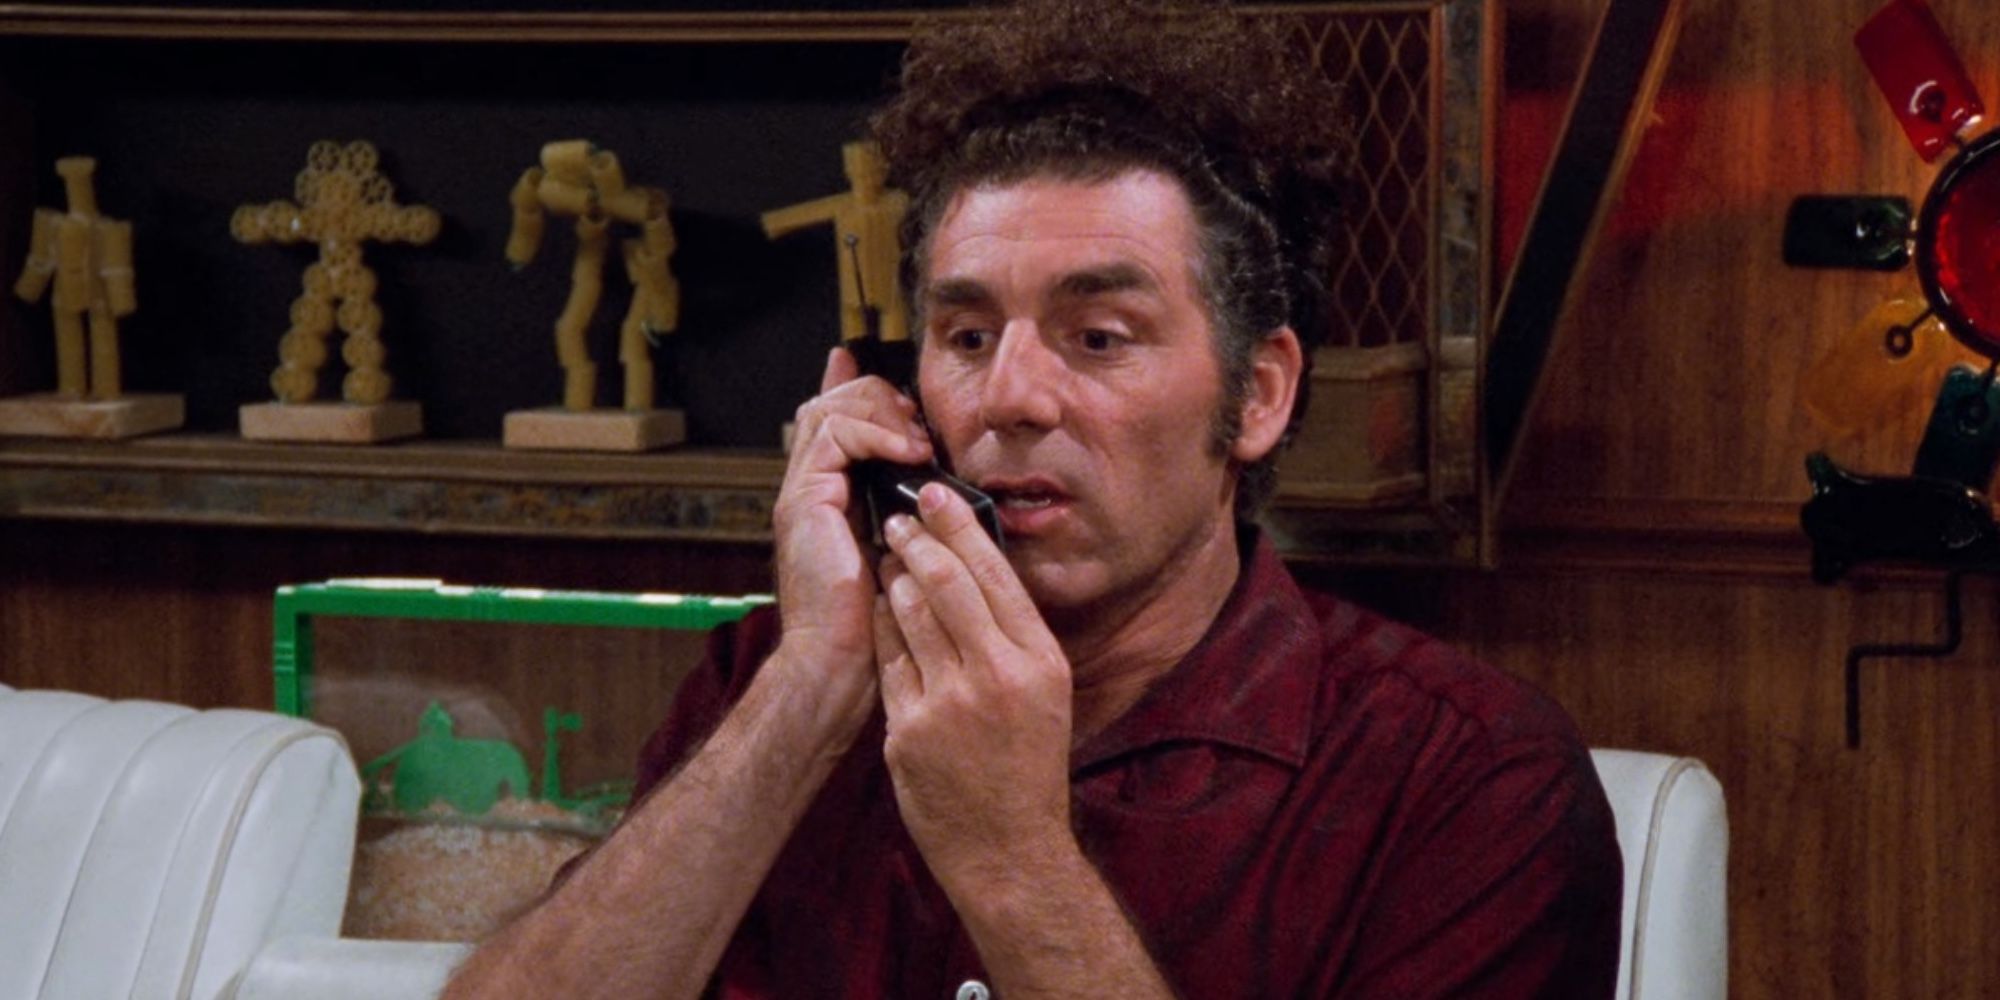 Kramer talking on the phone on Seinfeld